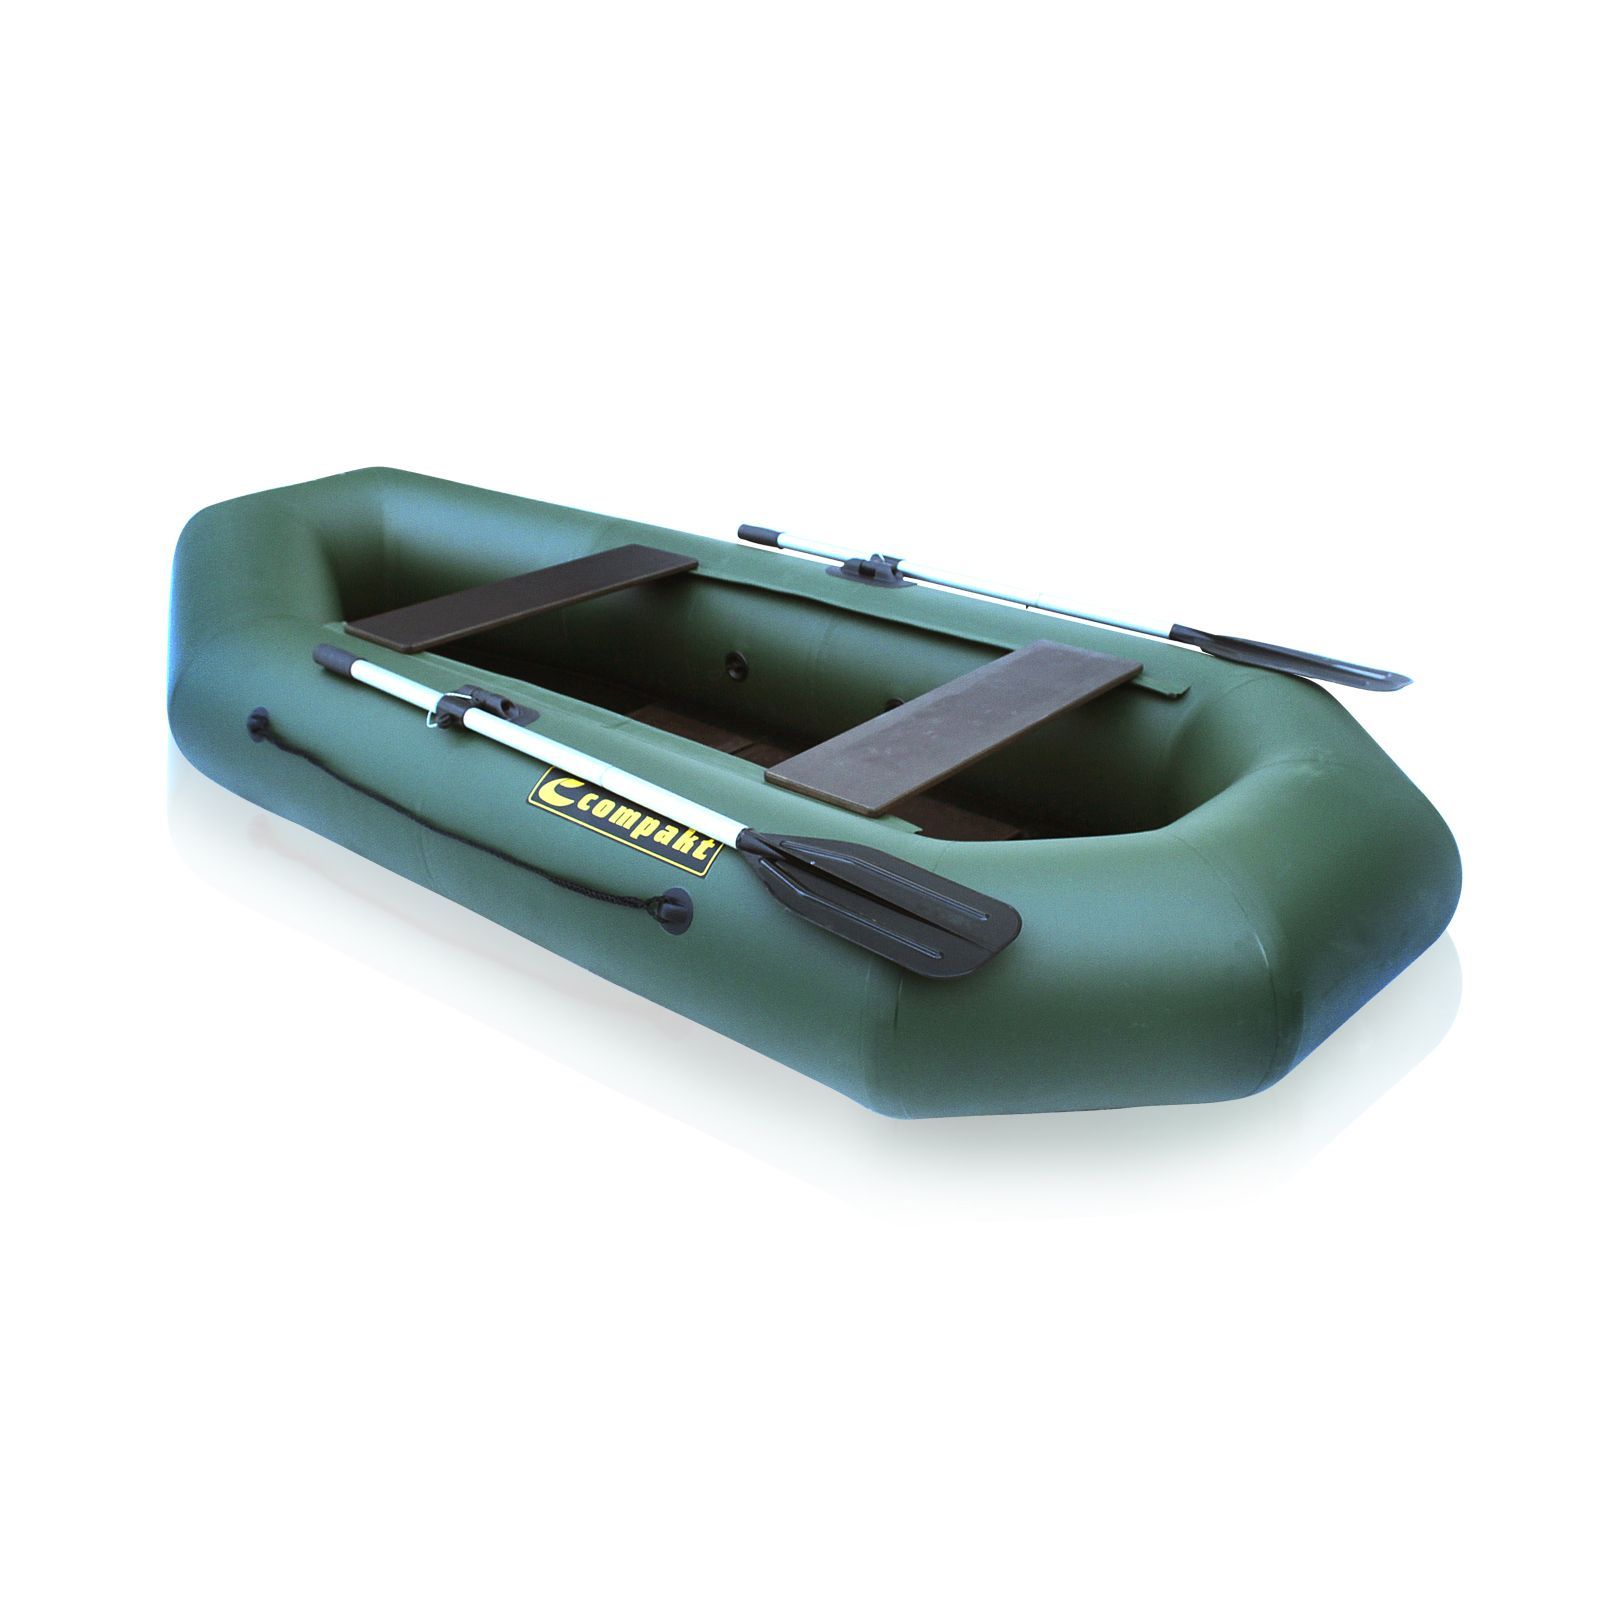 Лодка ПВХ Компакт-280N- ФС фанерная слань зеленый цвет упаковка-мешок оксфорд